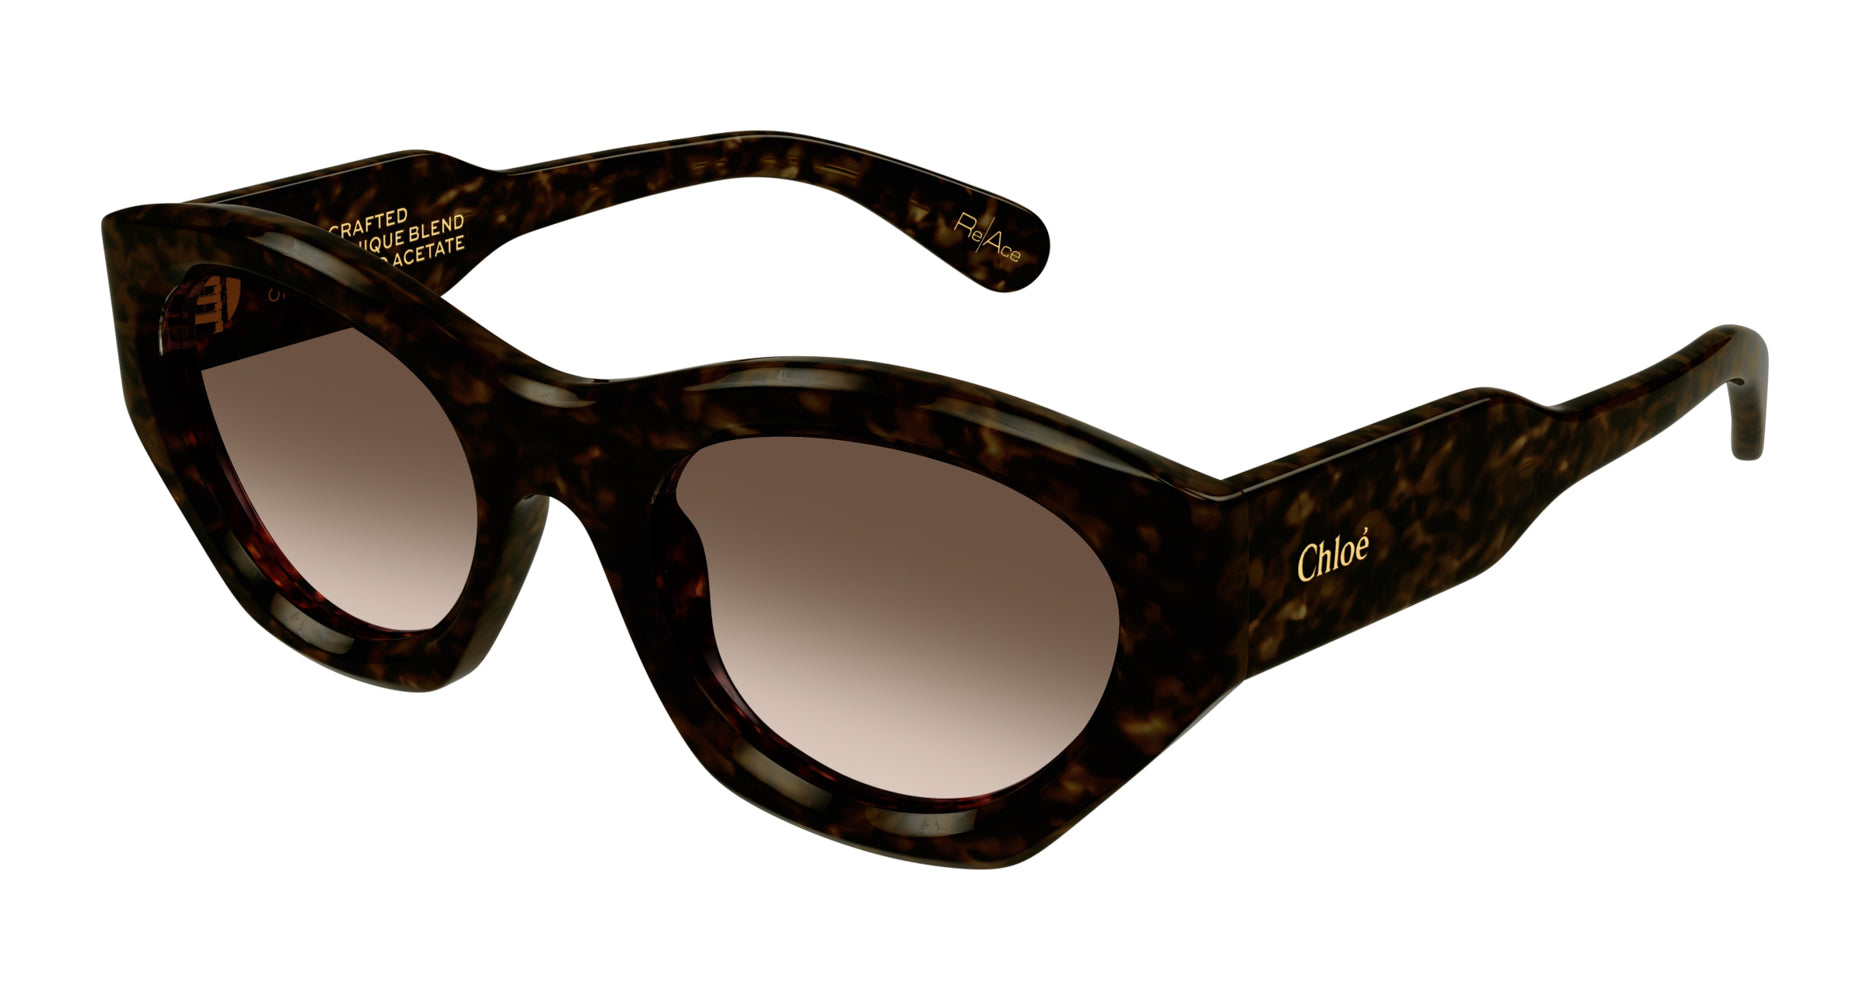 Vintage 80s Sunglasses Flattop Marbled Black Purple... - Depop